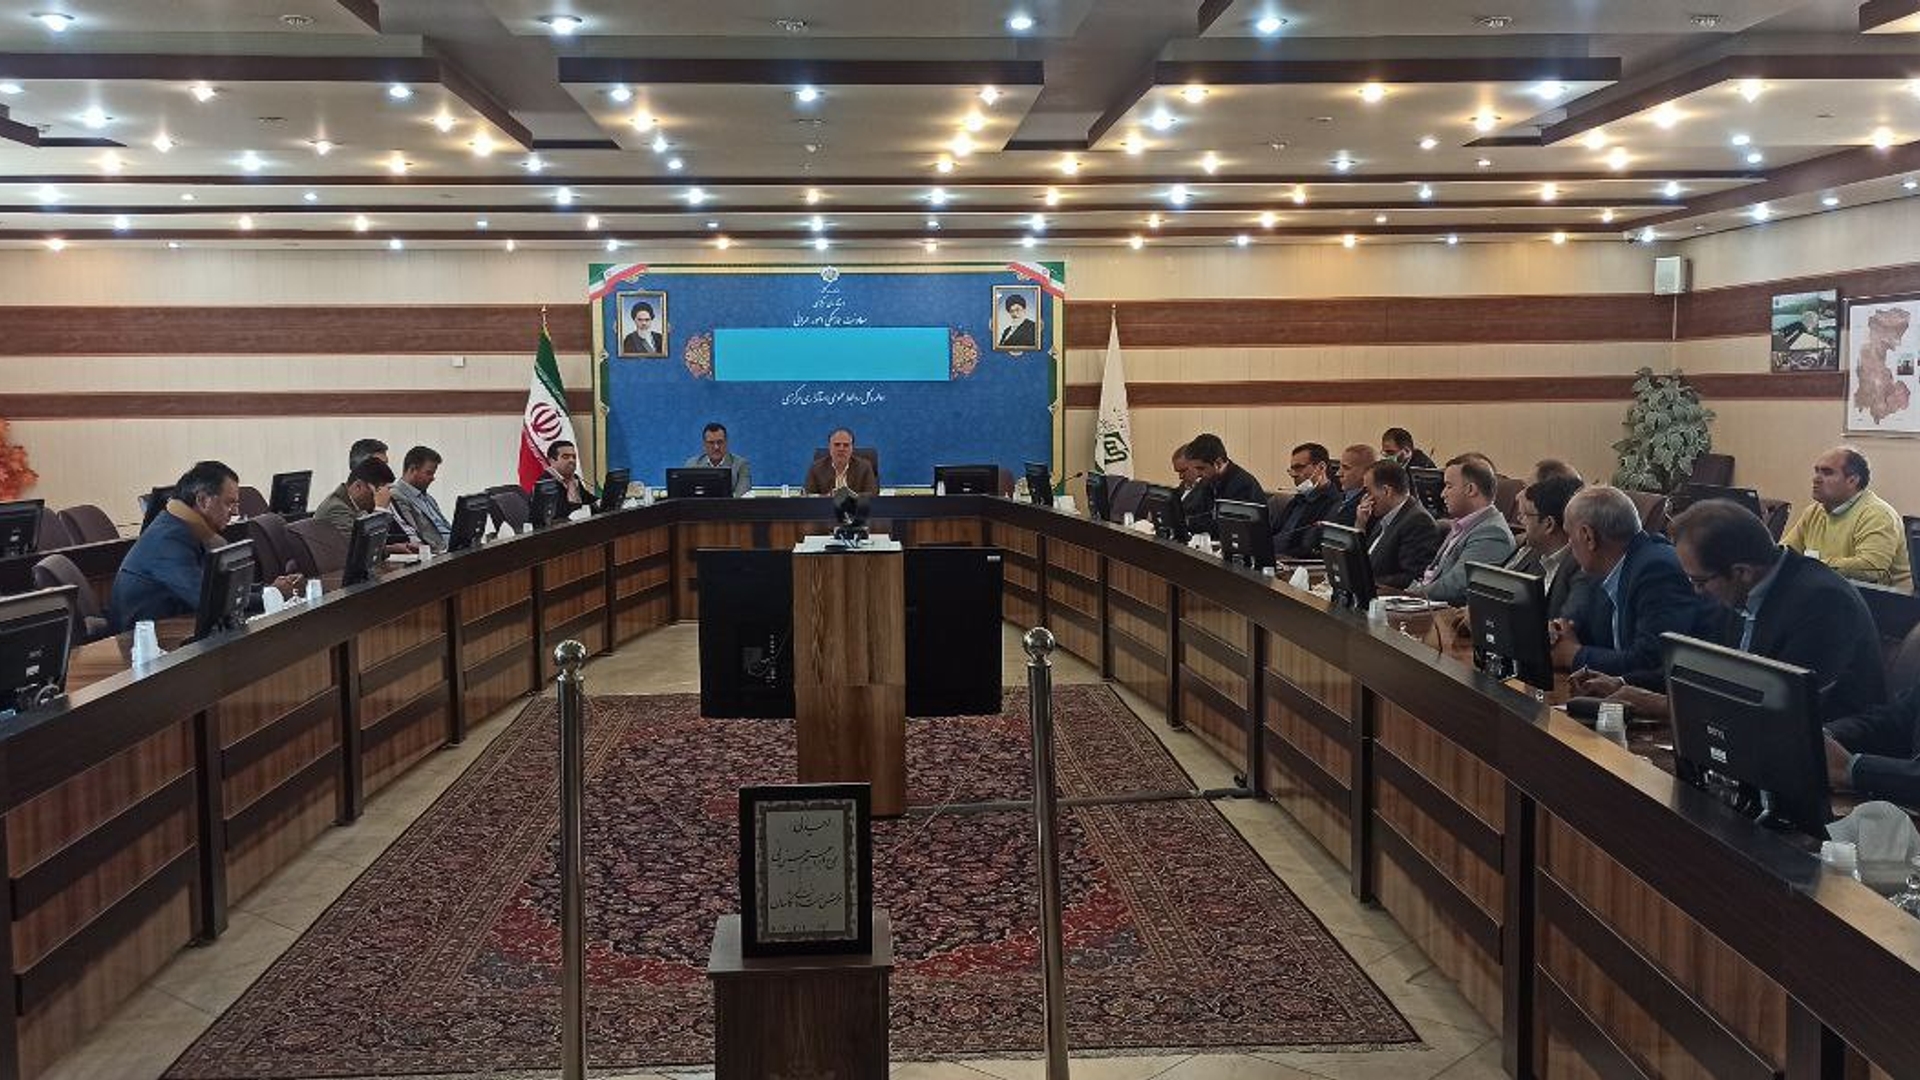 هشتمین جلسه شورای فنی استان برگزار شد.